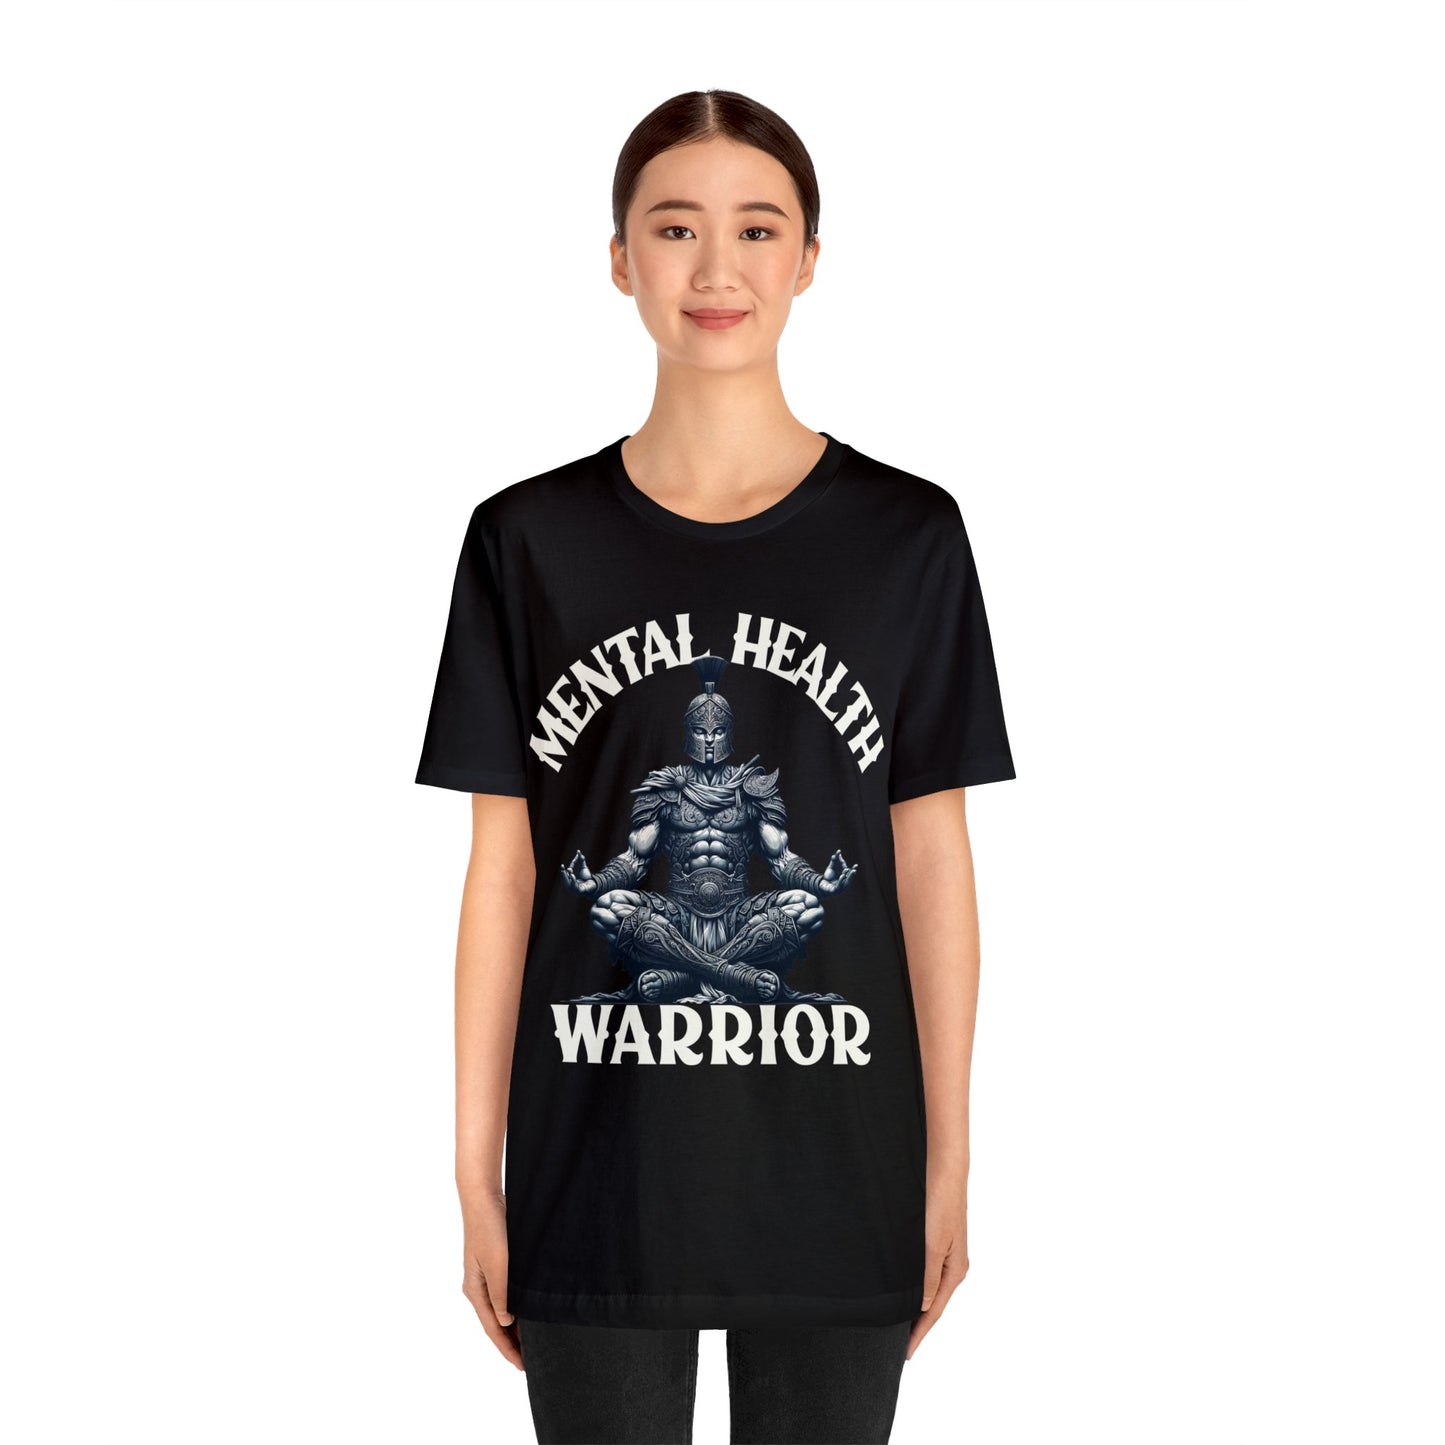 Mental Health Warrior Shirt, Awareness, Positivity, Motivational, Inspire